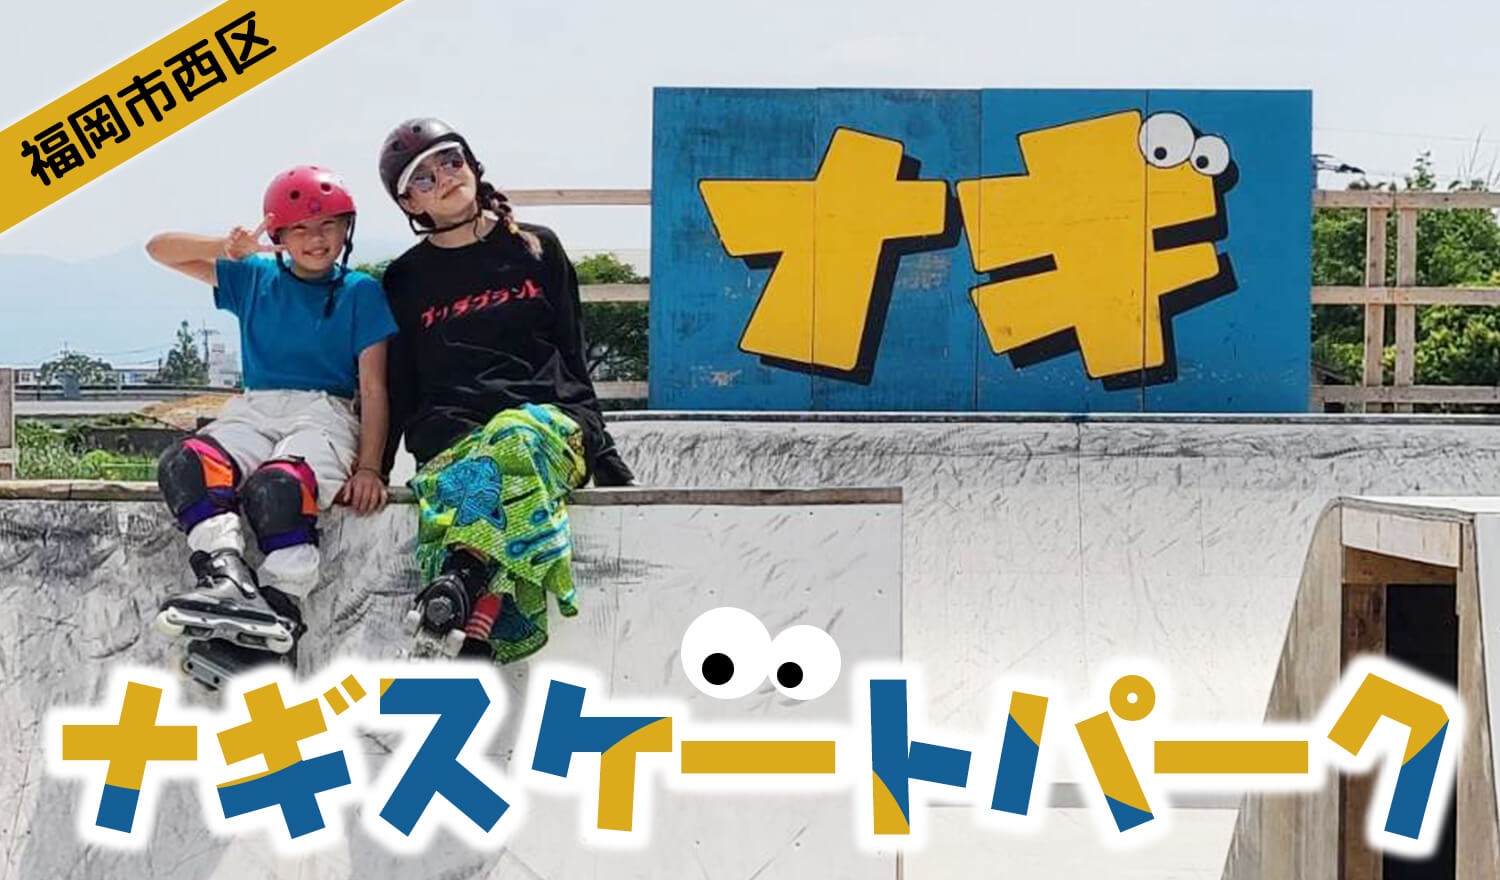 【九州 福岡 西区】BMXライダーによるDIYによって作られた屋外パーク、ナギスケートパークご紹介!